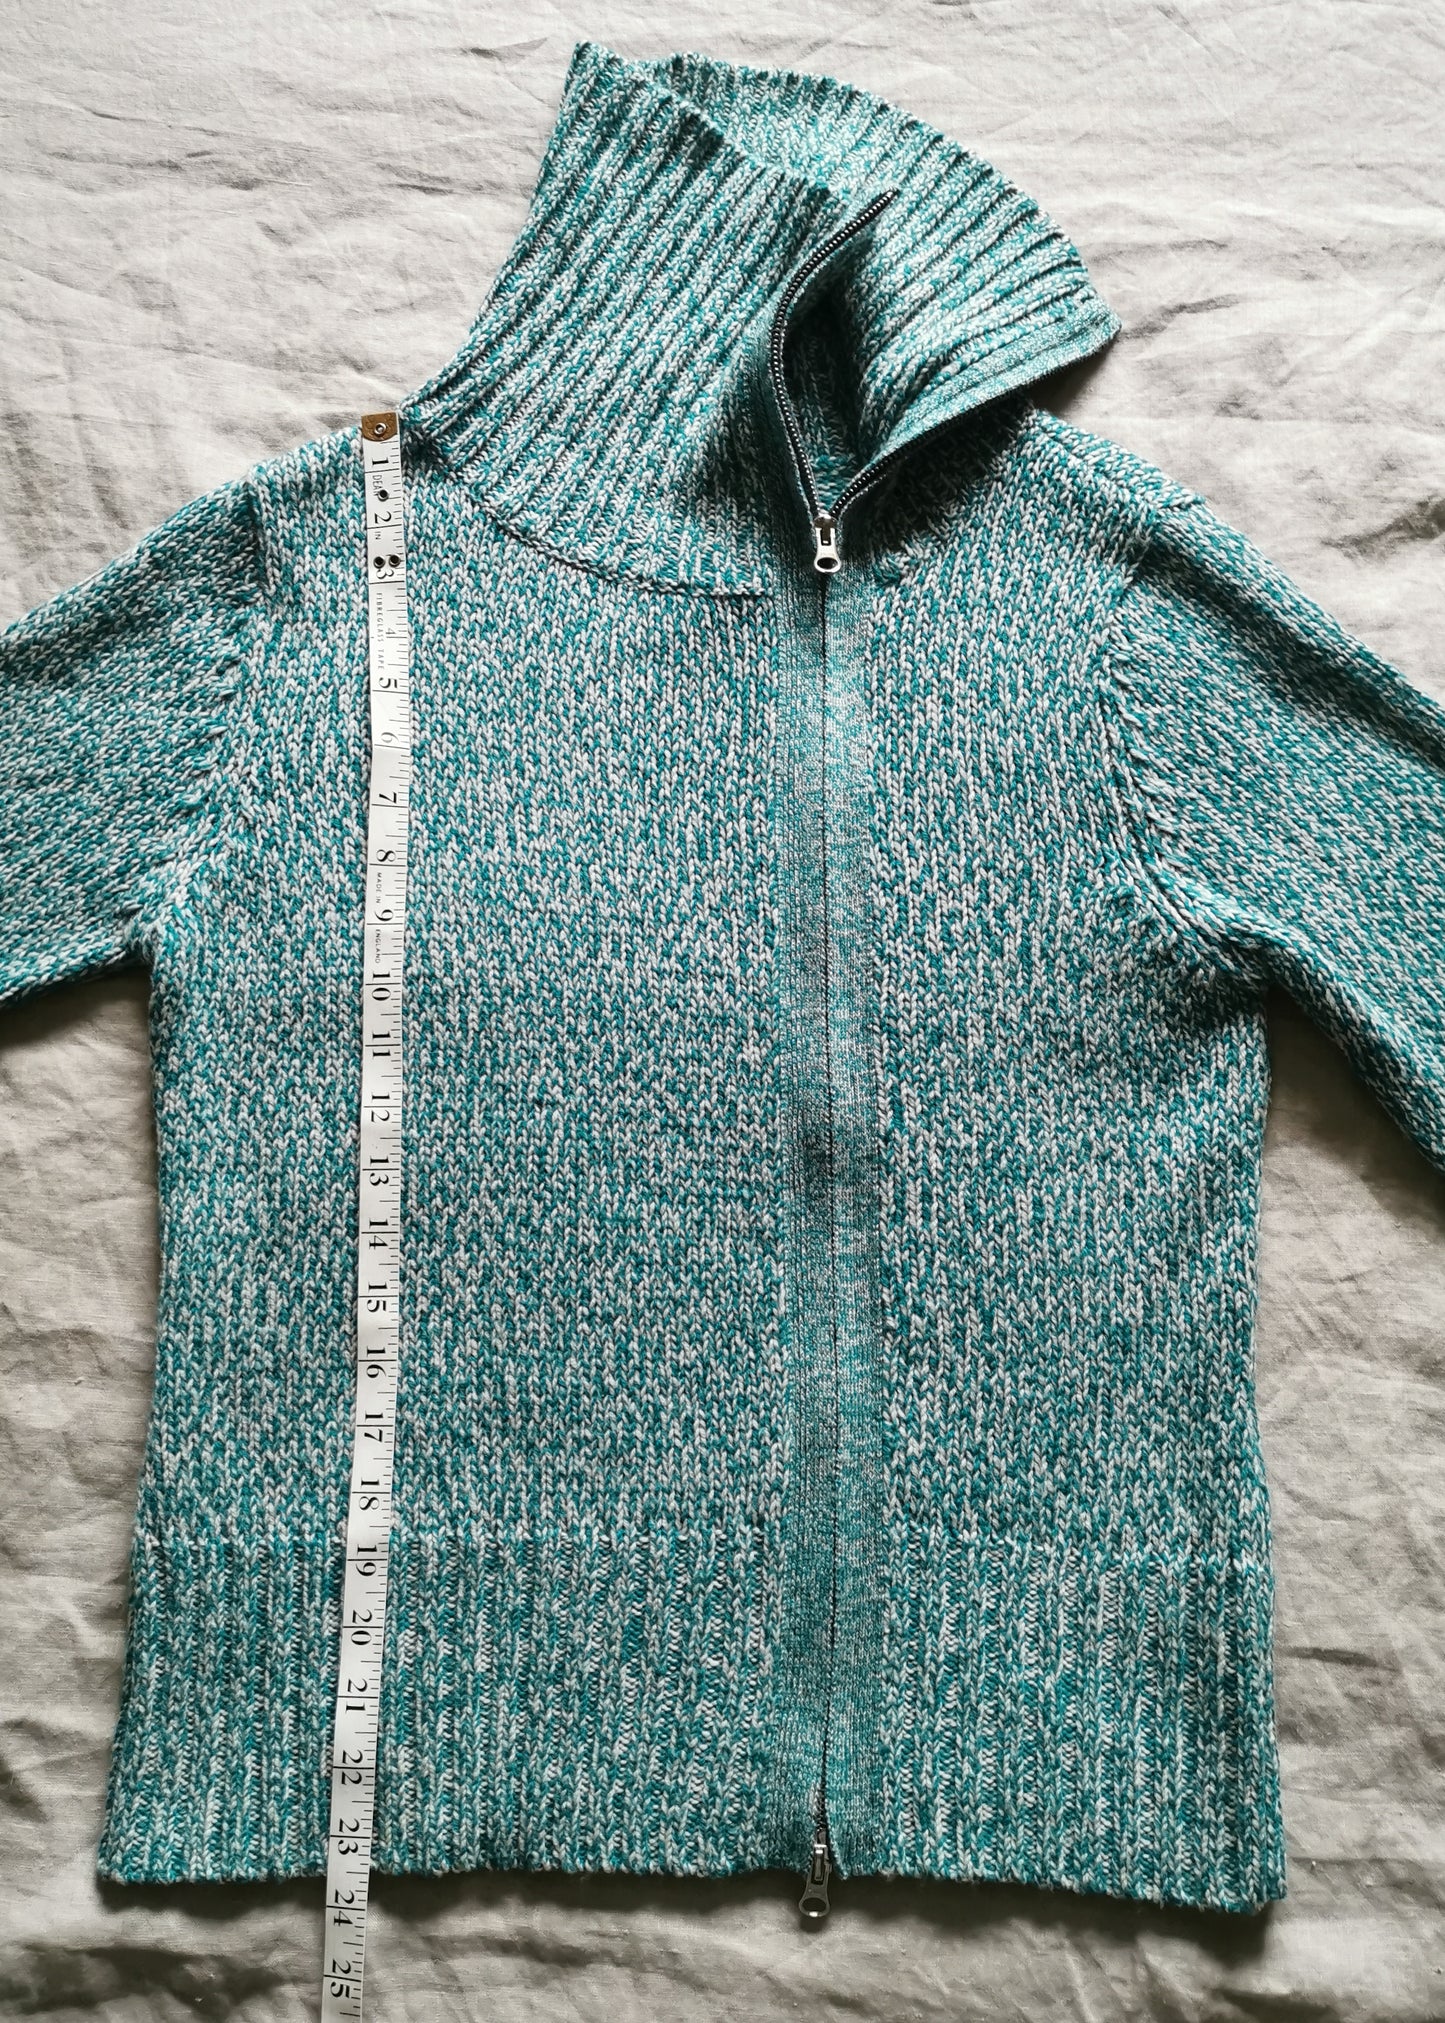 BCBG Max Azria Merino Wool Cardigan Sweater (L)*